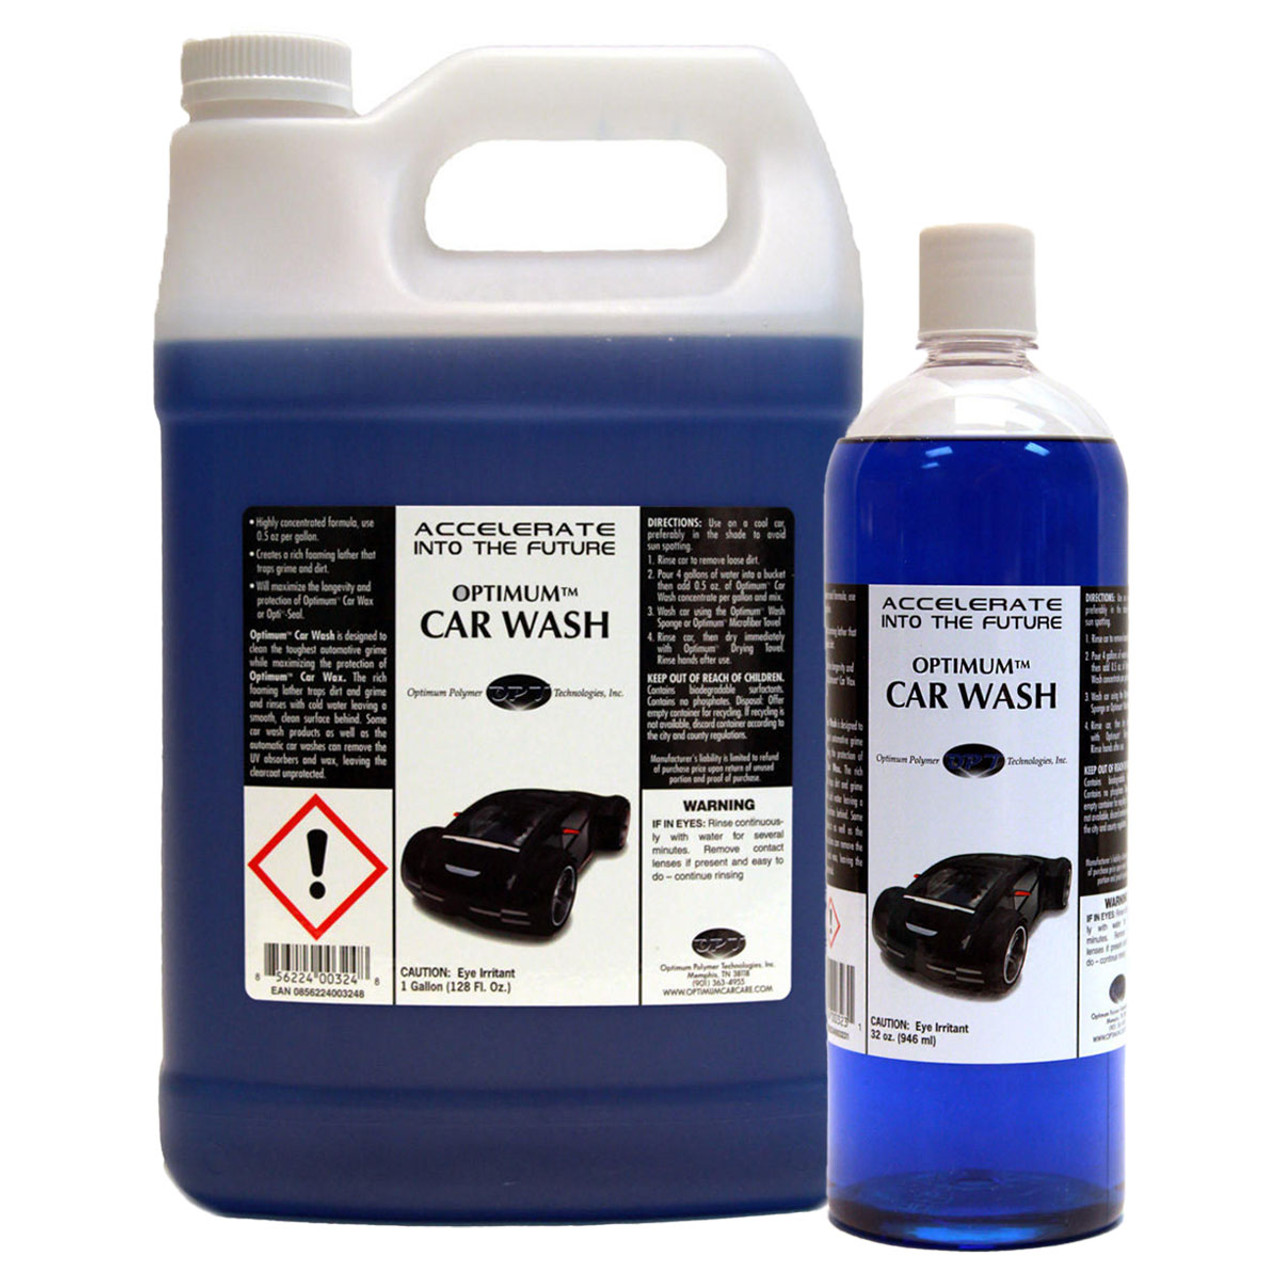 Optimo Car Wash - New Optimo Wash Exterior Wash, Sealer